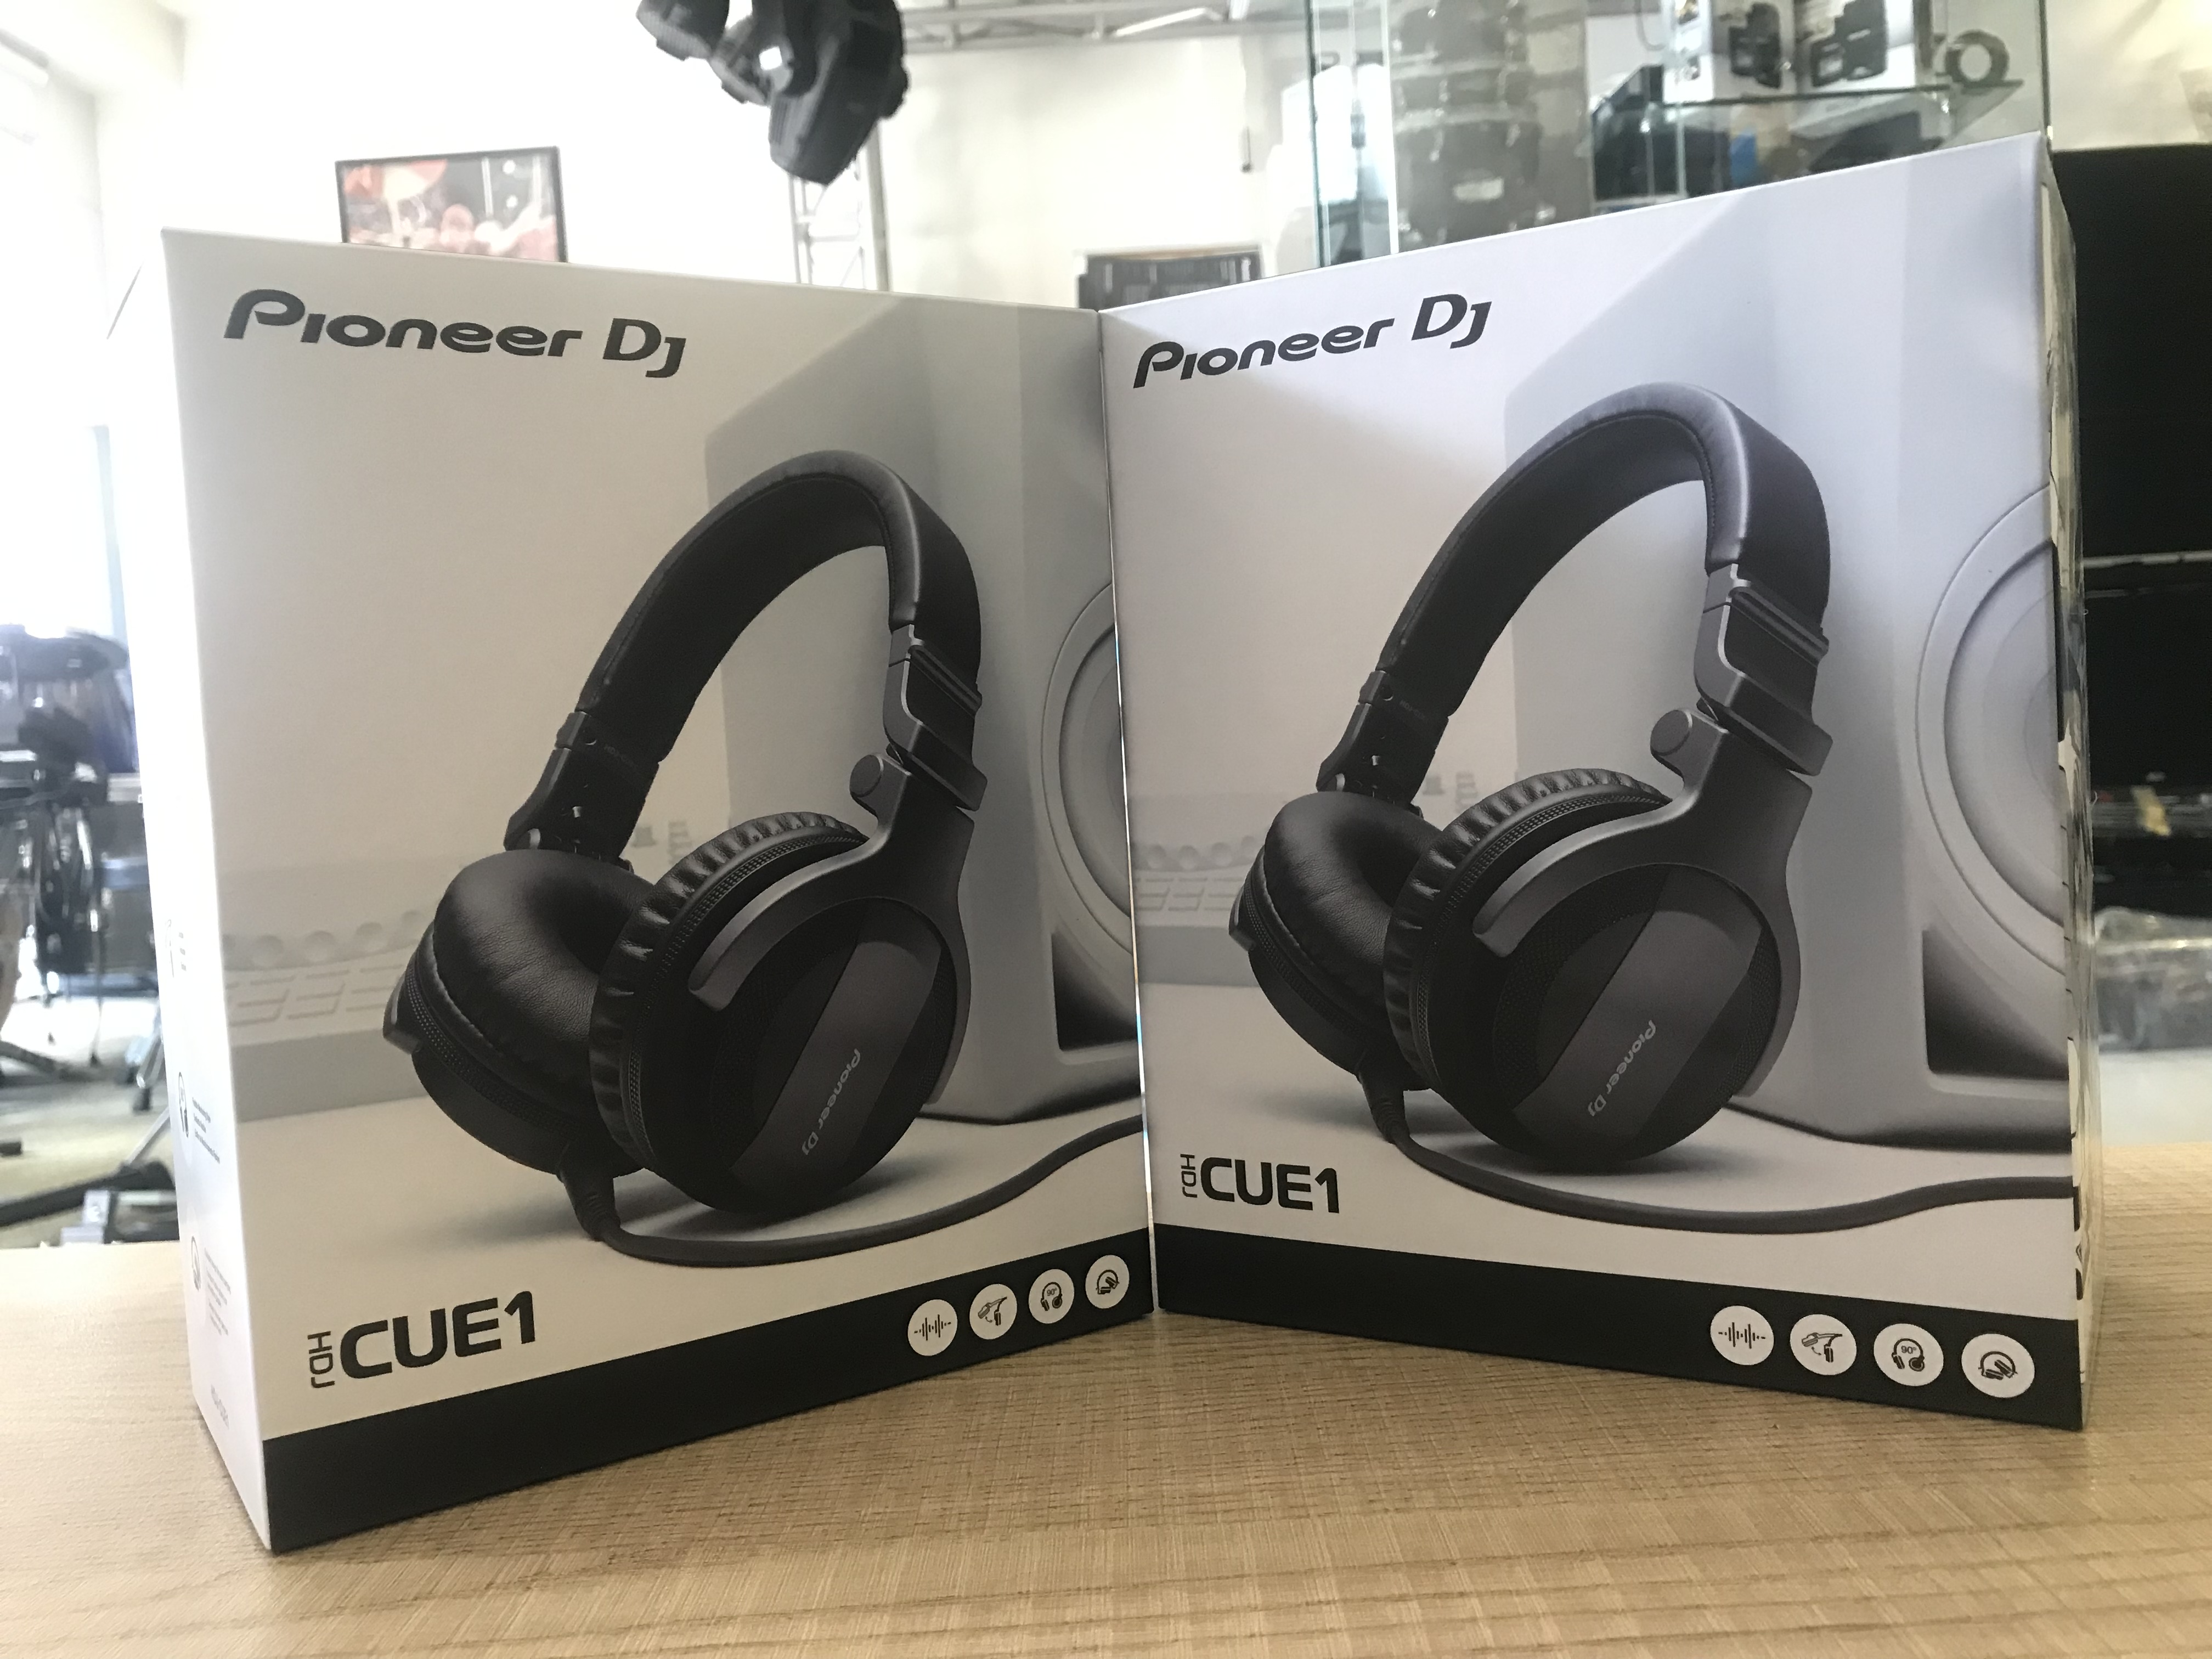 Tai nghe (Headphones DJ) HDJ-CUE1 (Pioneer DJ) - Hàng Chính Hãng